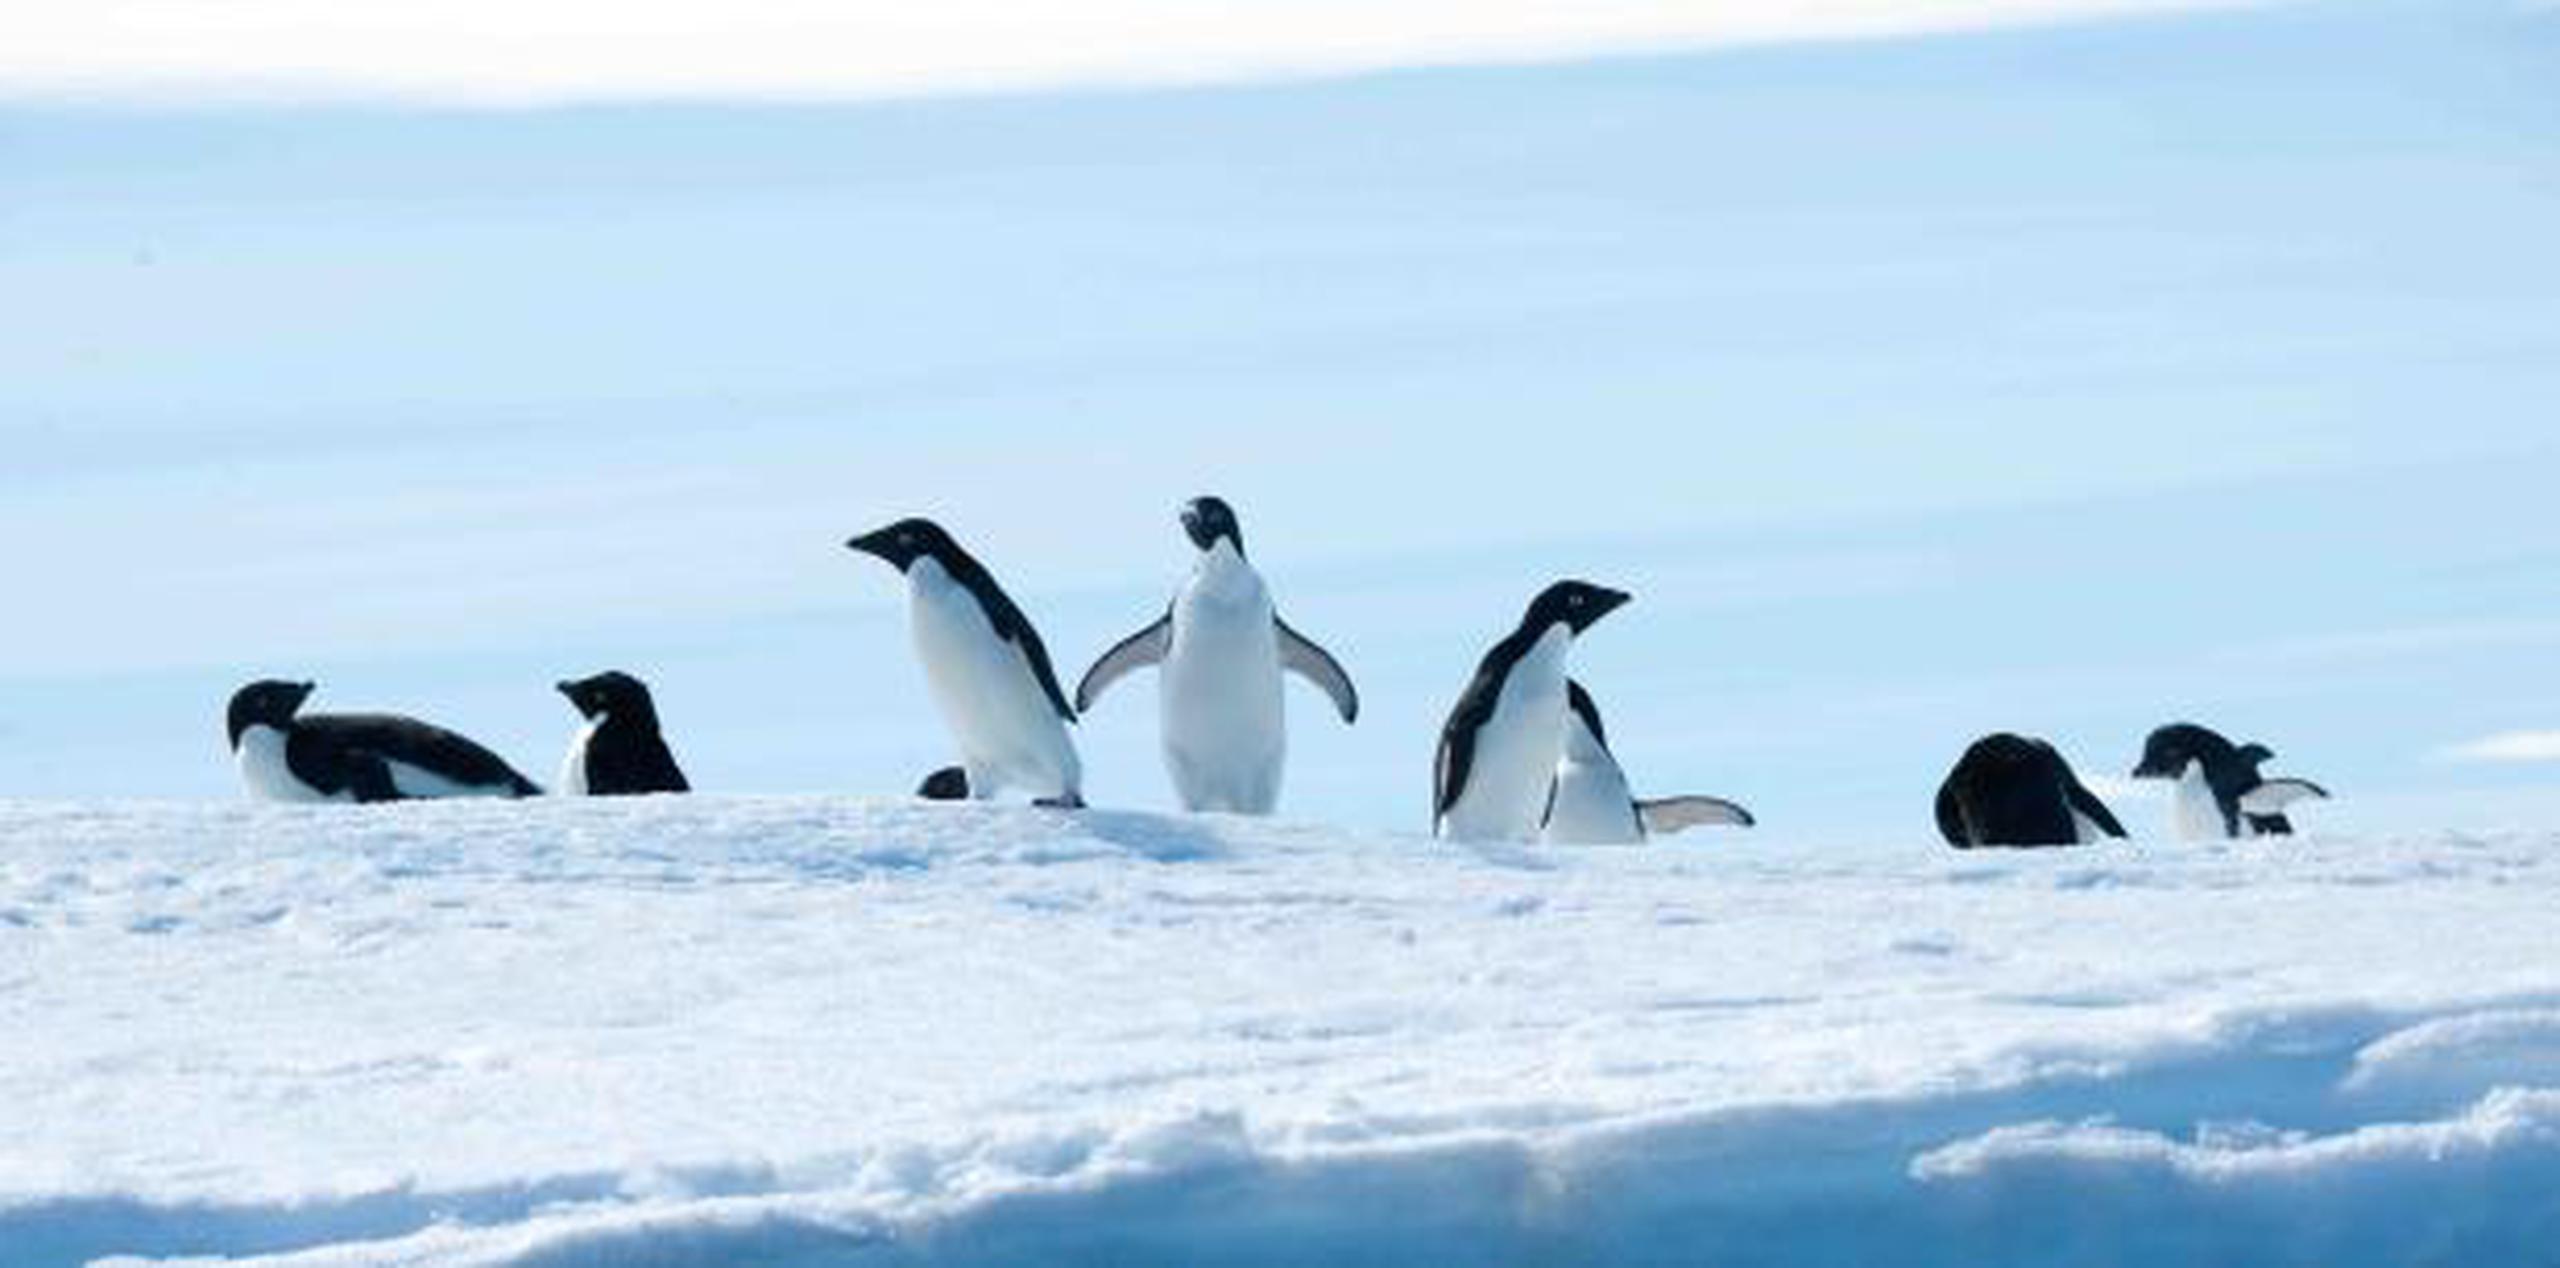 El hallazgo de microplásticos en pingüinos fue catalogado como "alarmante". (Shutterstock)